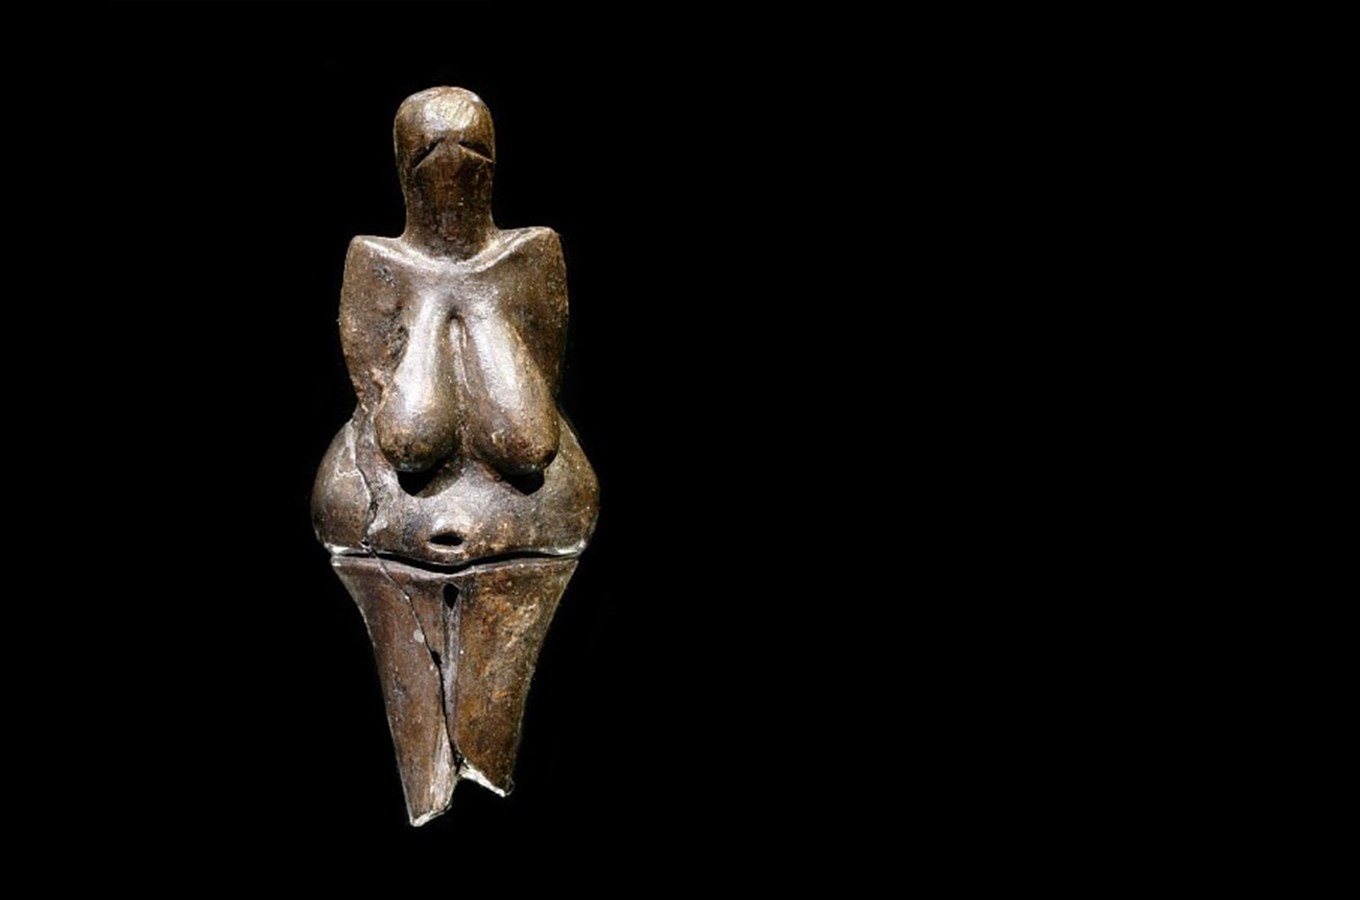 Věstonická venuše - nejstarší umělecký předmět z keramiky na světě